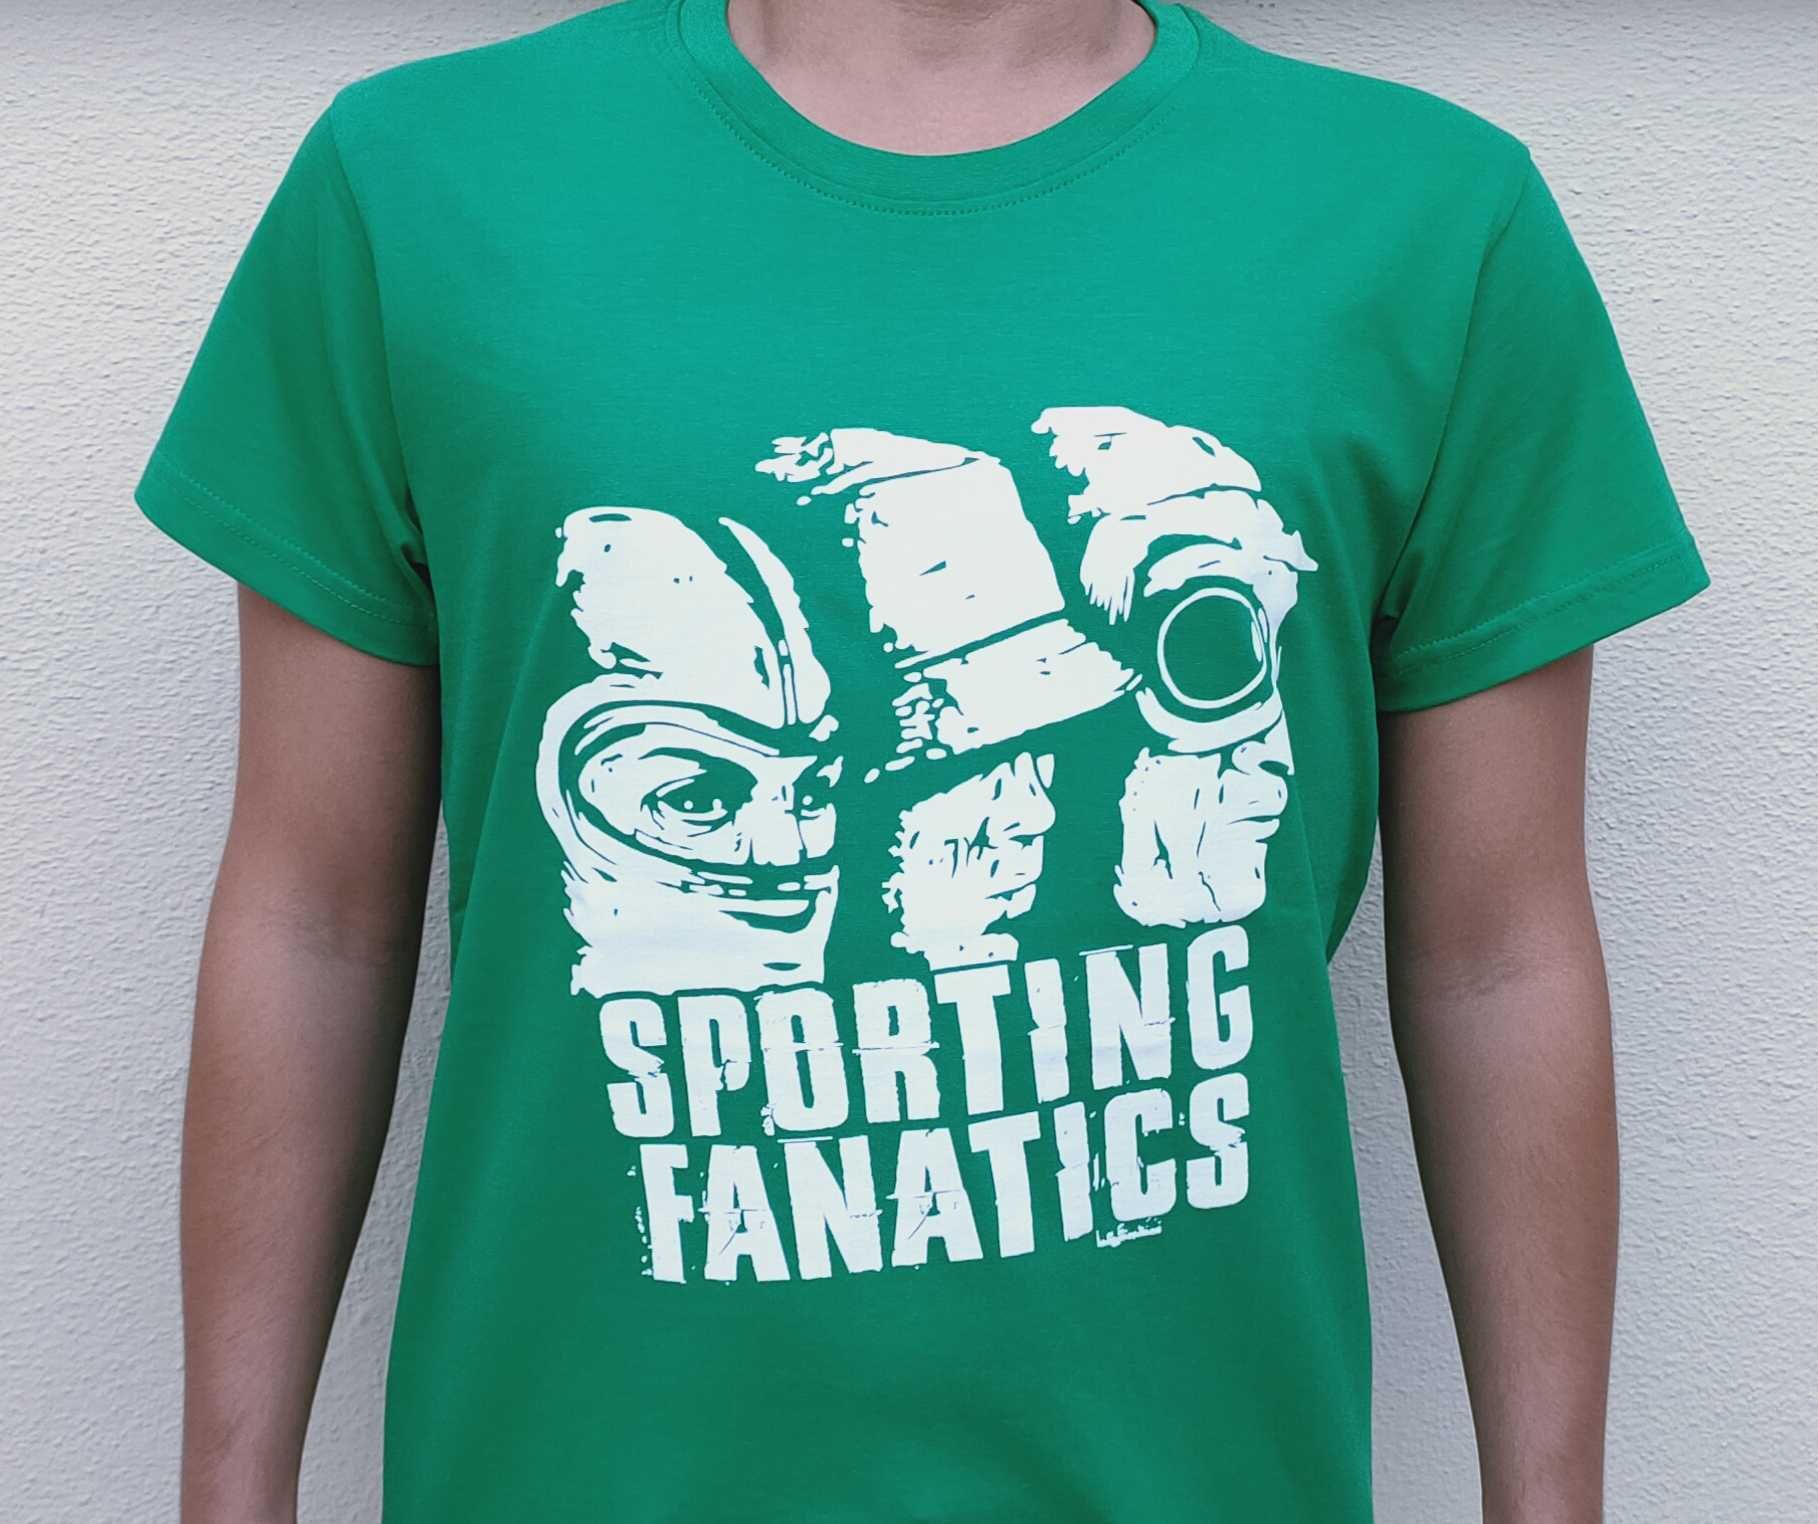 T-shirt "Sporting Fanatics" em 2 cores - VER 2 FOTOS (Vendo/Troco)